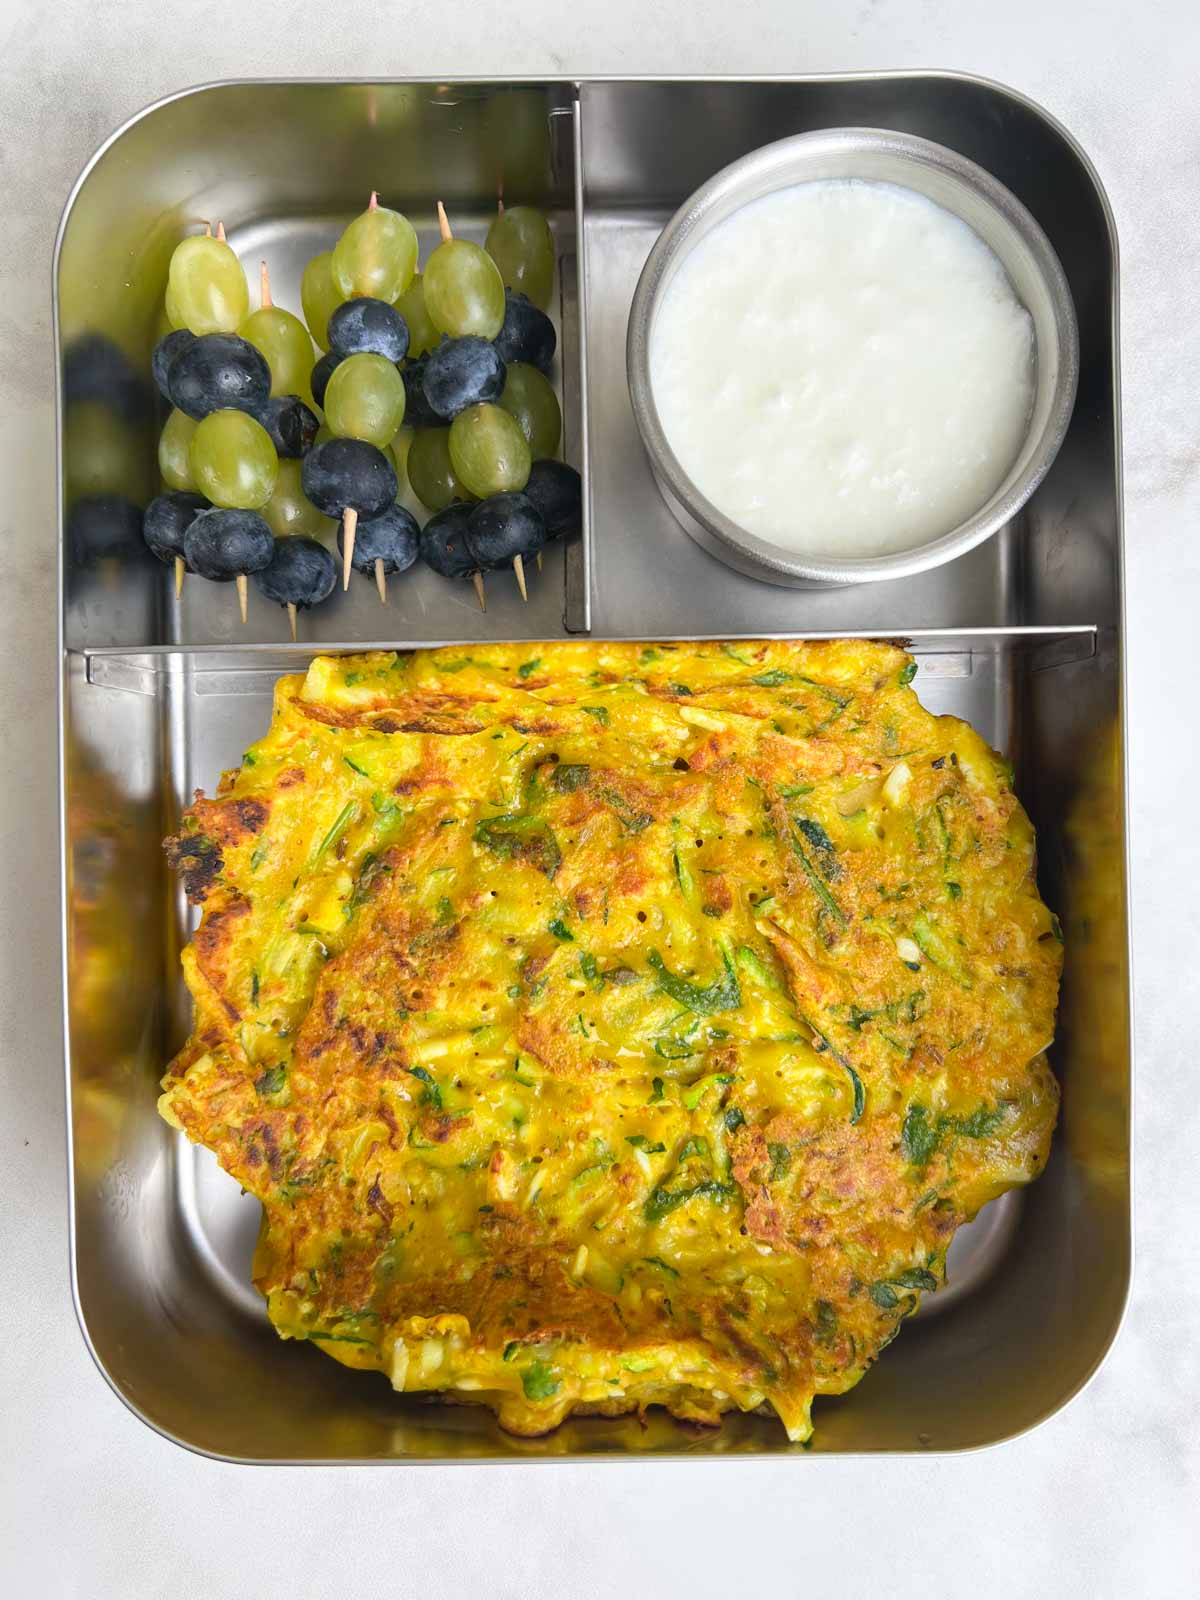 kids school lunch box for Zucchini Paneer Cheela/Pancake, Yogurt, Fruits